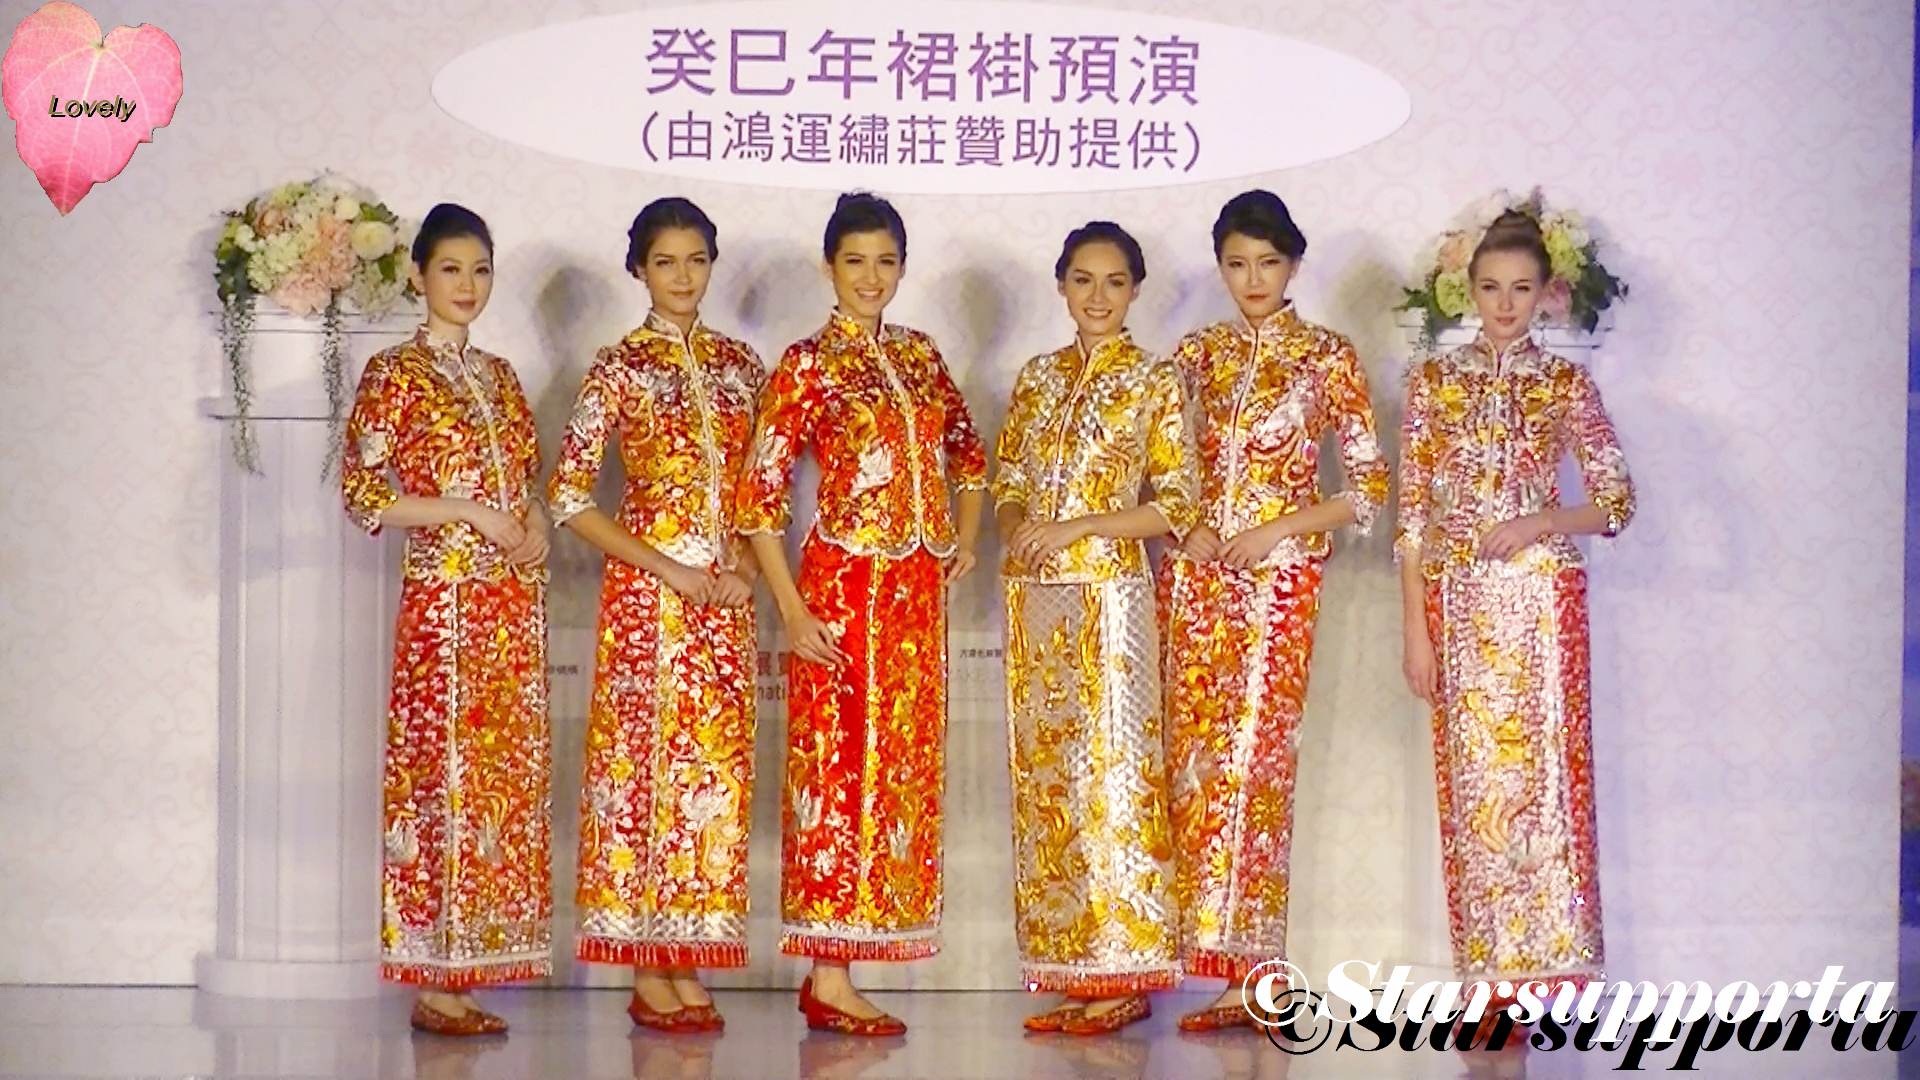 20121104 Hong Kong Wedding Expo - 鴻運繡莊: 癸巳年裙褂預演 @ 香港會議展覽中心 HKCEC (video)